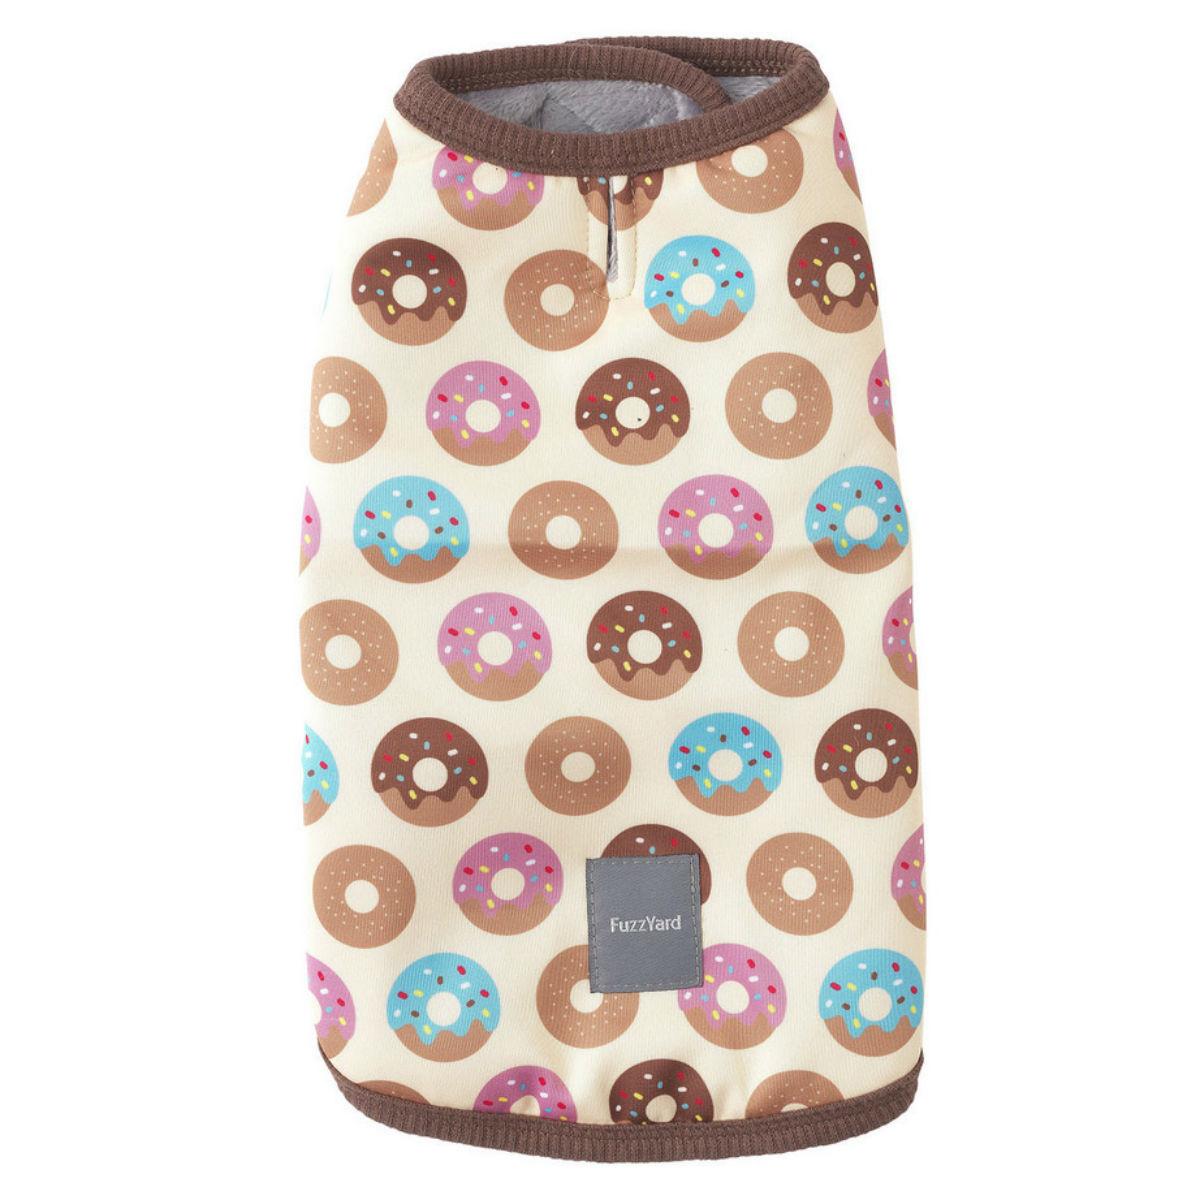 FuzzYard Go Nuts (Donuts) Wrap Dog Vest